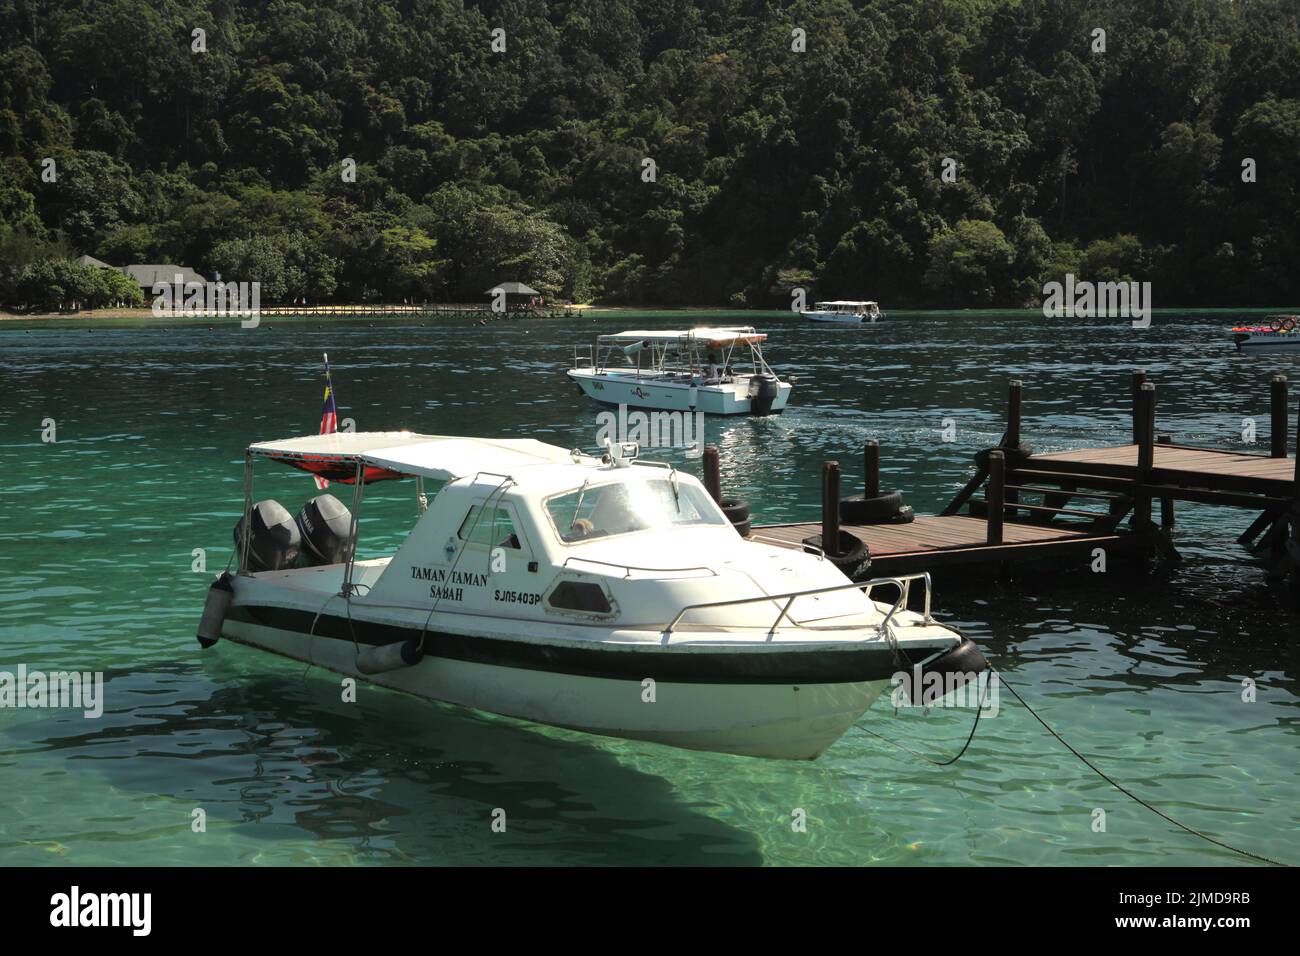 Un barco turístico en las aguas costeras de Pulau Sapi (isla SAPI), una parte del parque Tunku Abdul Rahman en Sabah, Malasia. Foto de stock